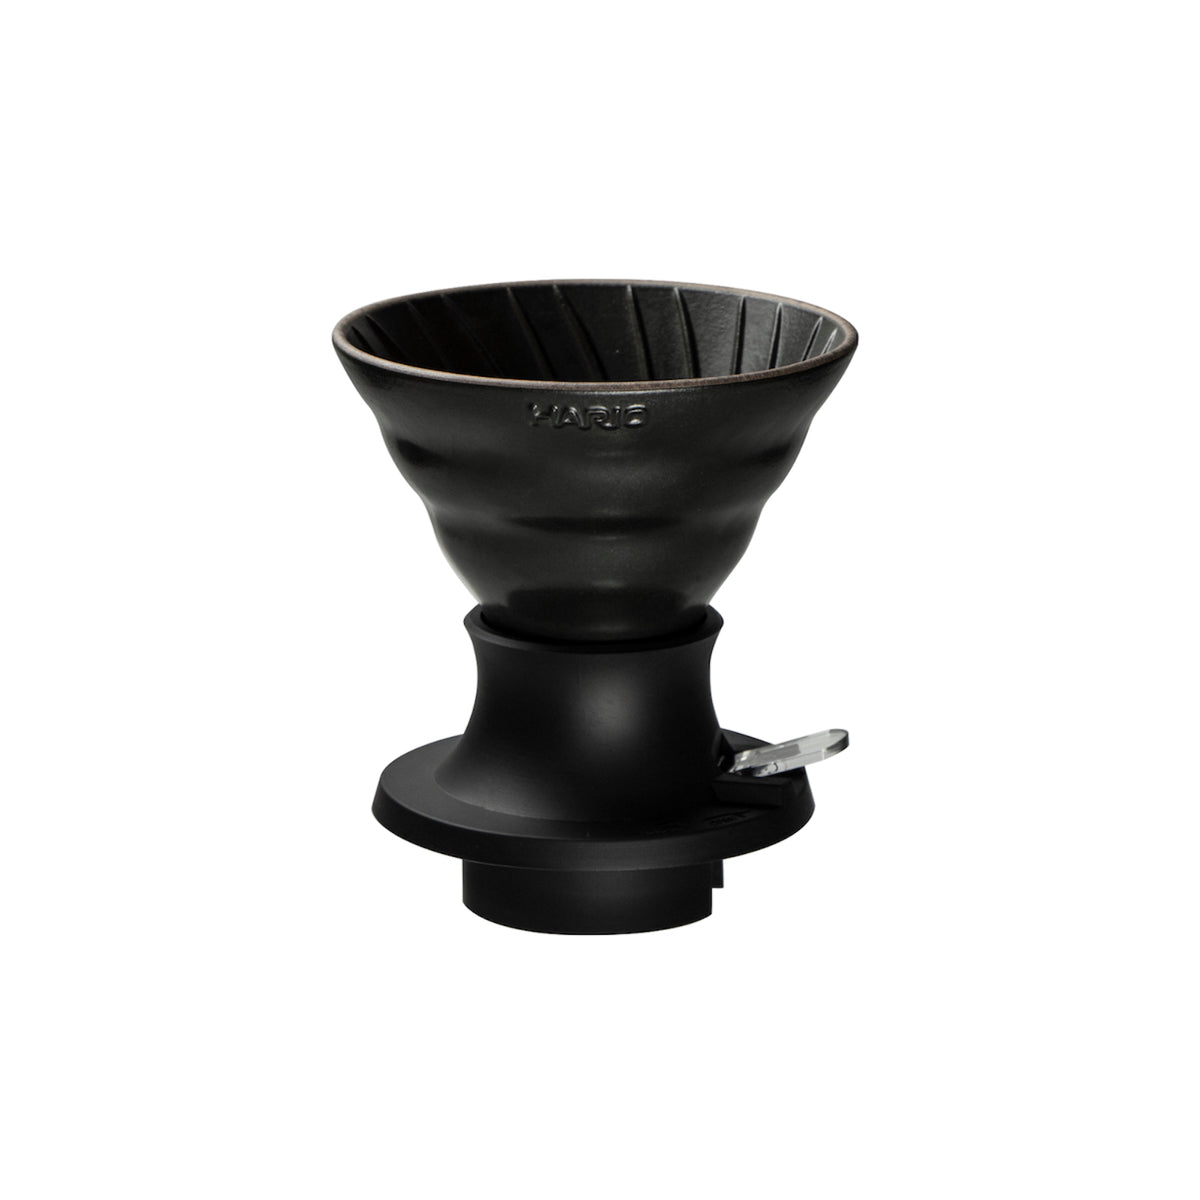 HARIO x Lin's Ceramics Studio Swtich Immersion Coffee Dripper - Volcano Black